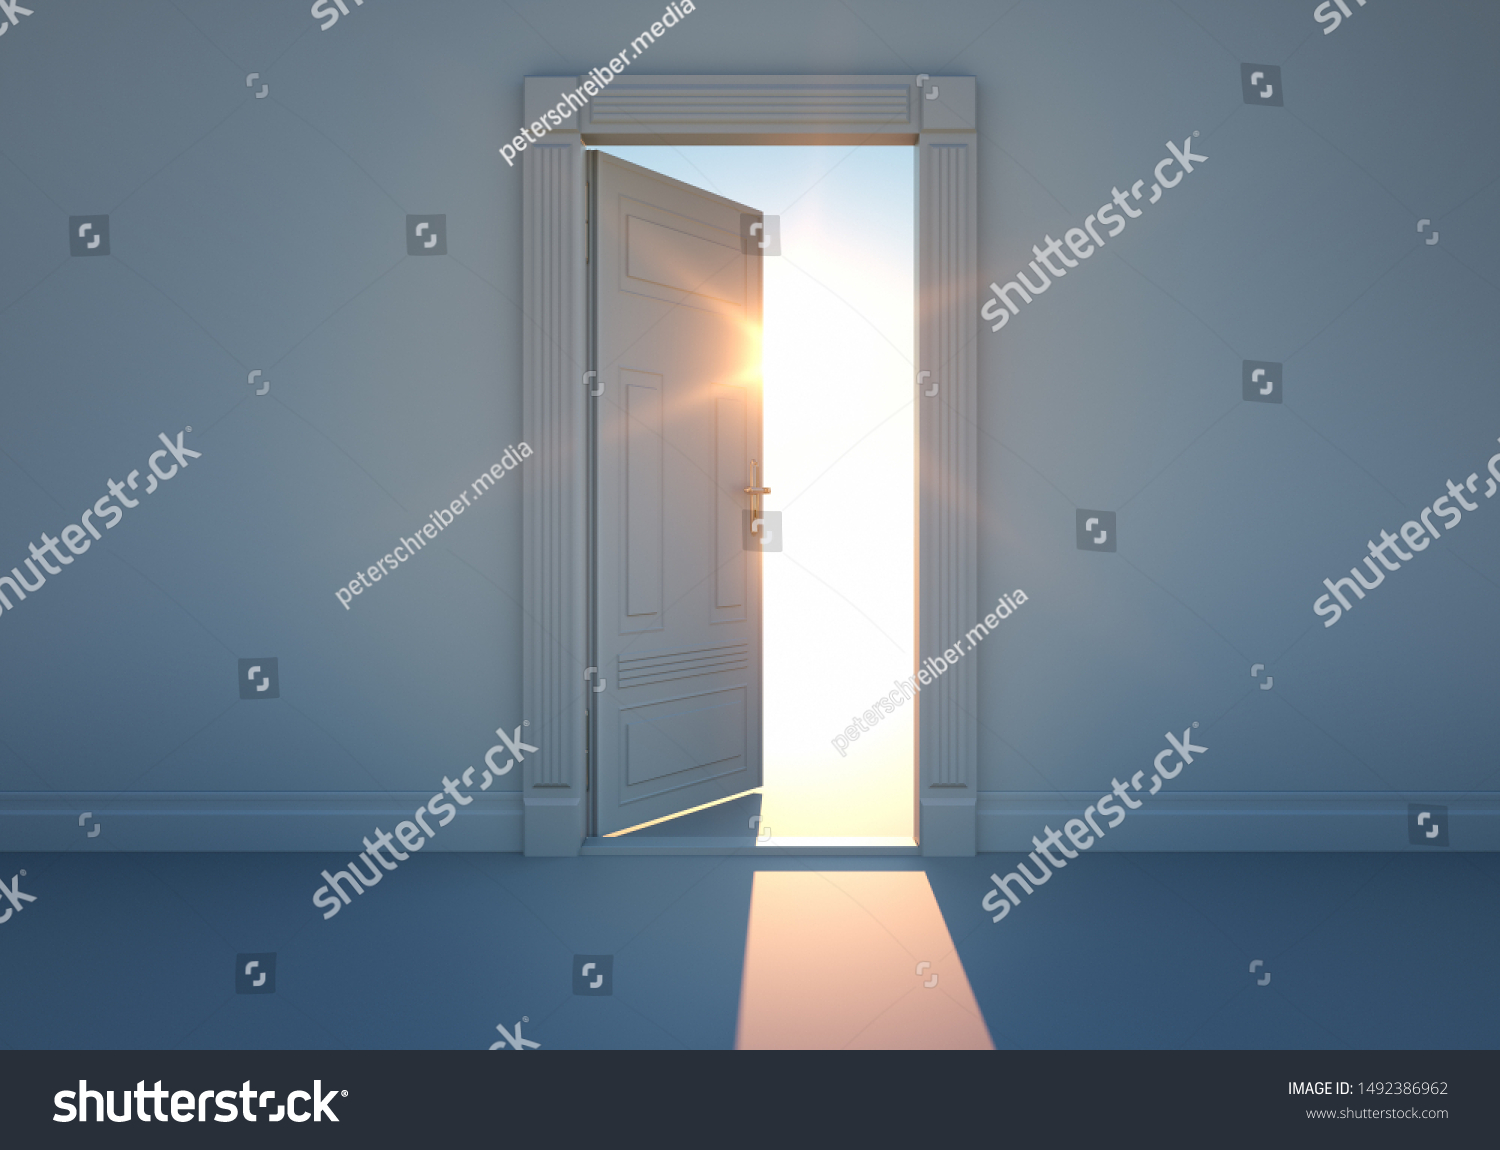 日差しの扉を開く 未来のコンセプト 3dイラスト のイラスト素材